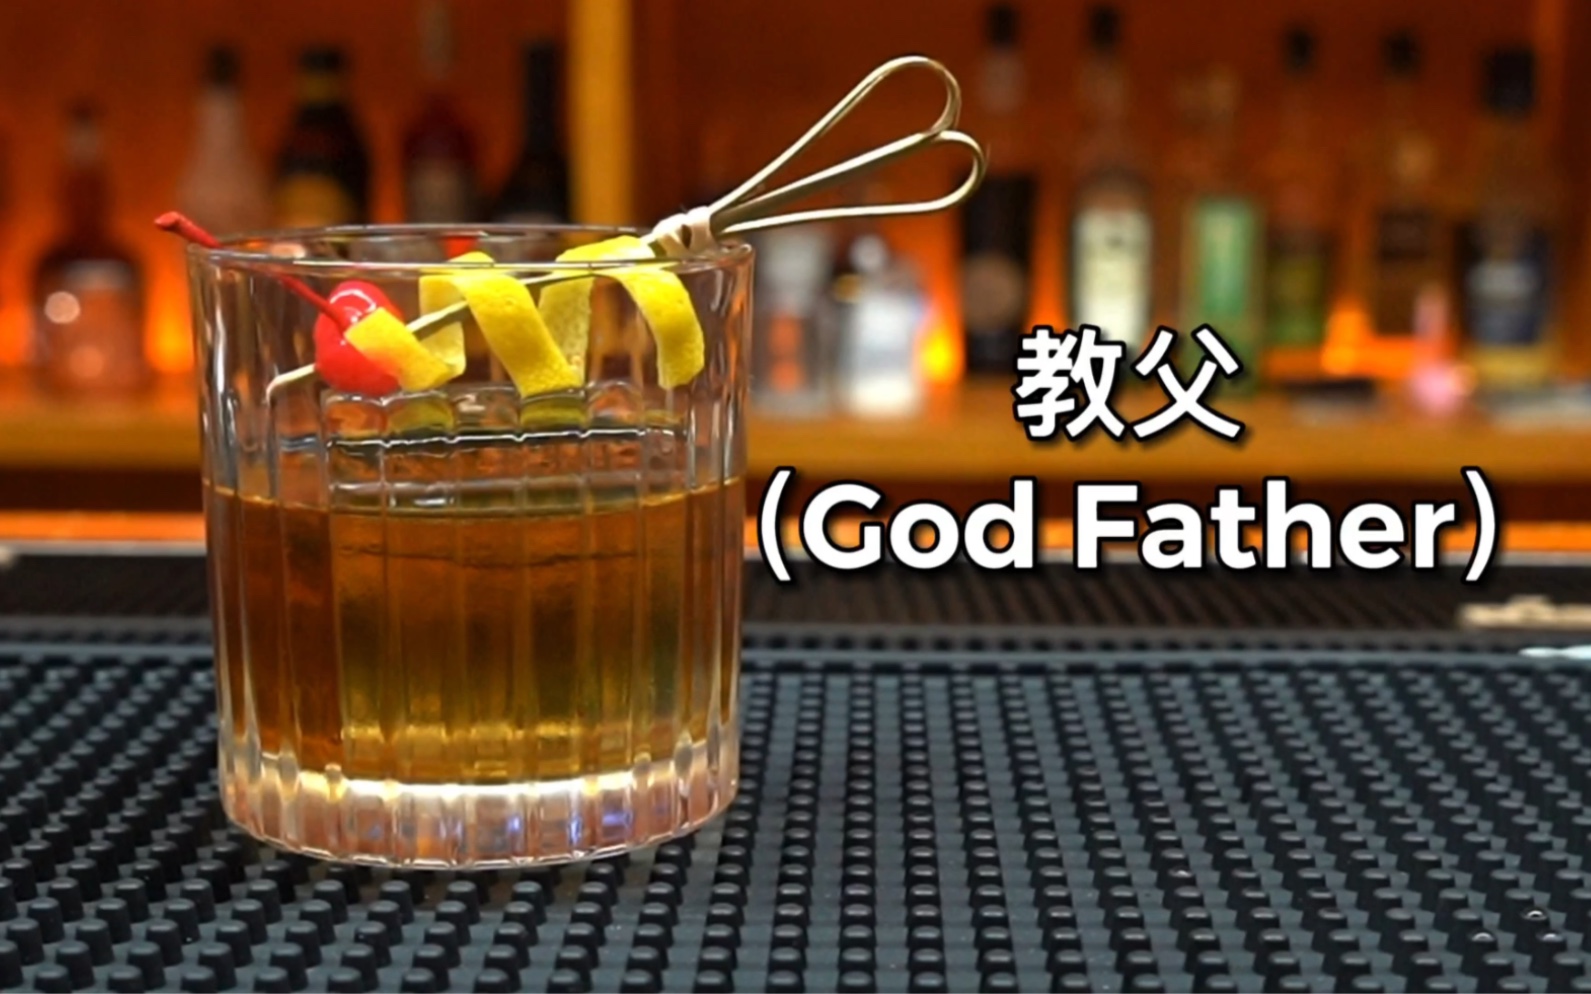 教父（God Father）一杯只属于男人的鸡尾酒！是一杯酒精度在25度左右的鸡尾酒，相比其他鸡尾酒，这是他成为男人酒的原因之一！